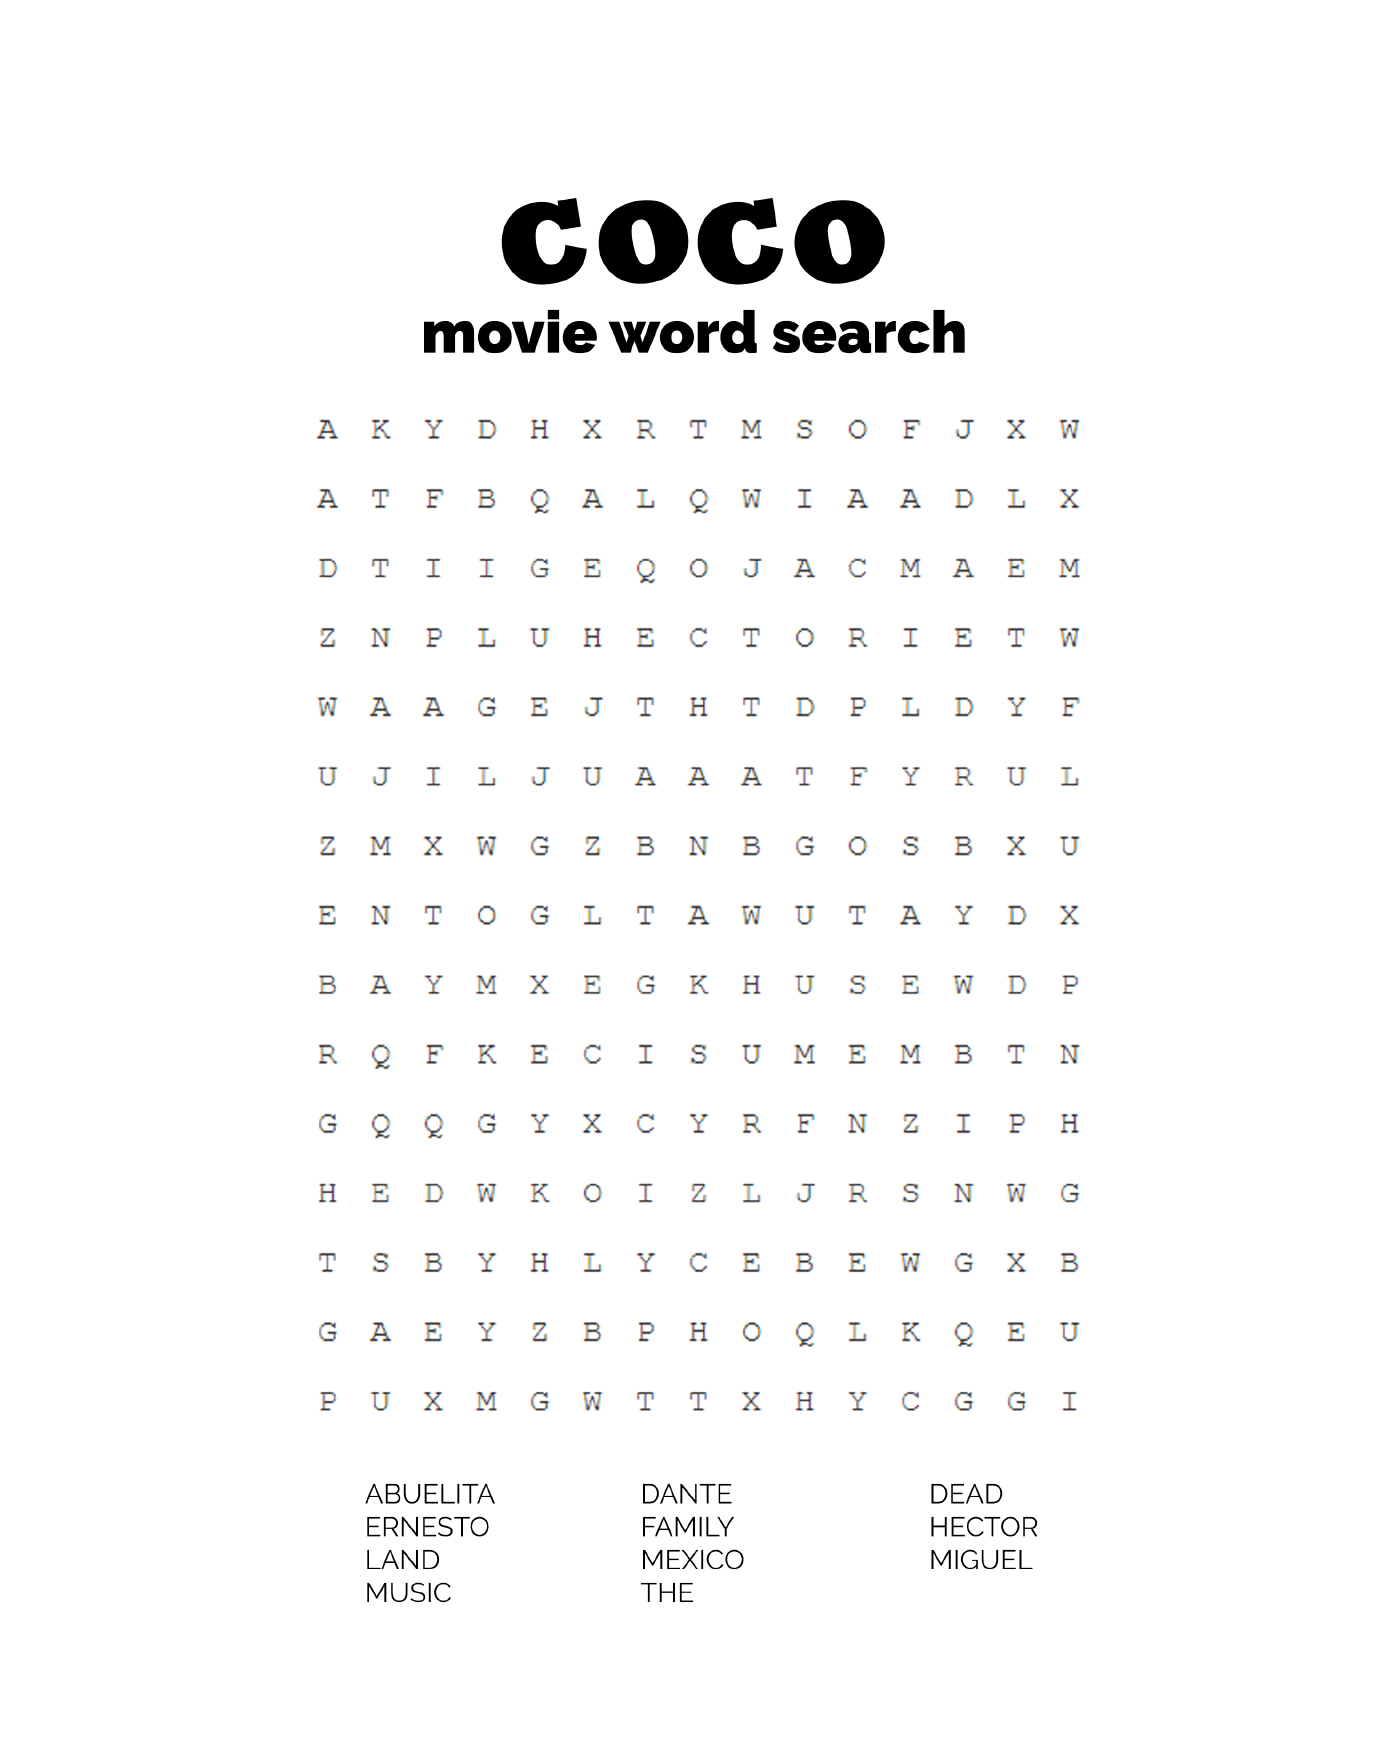  Suche nach Wörtern basierend auf dem Film Coco 